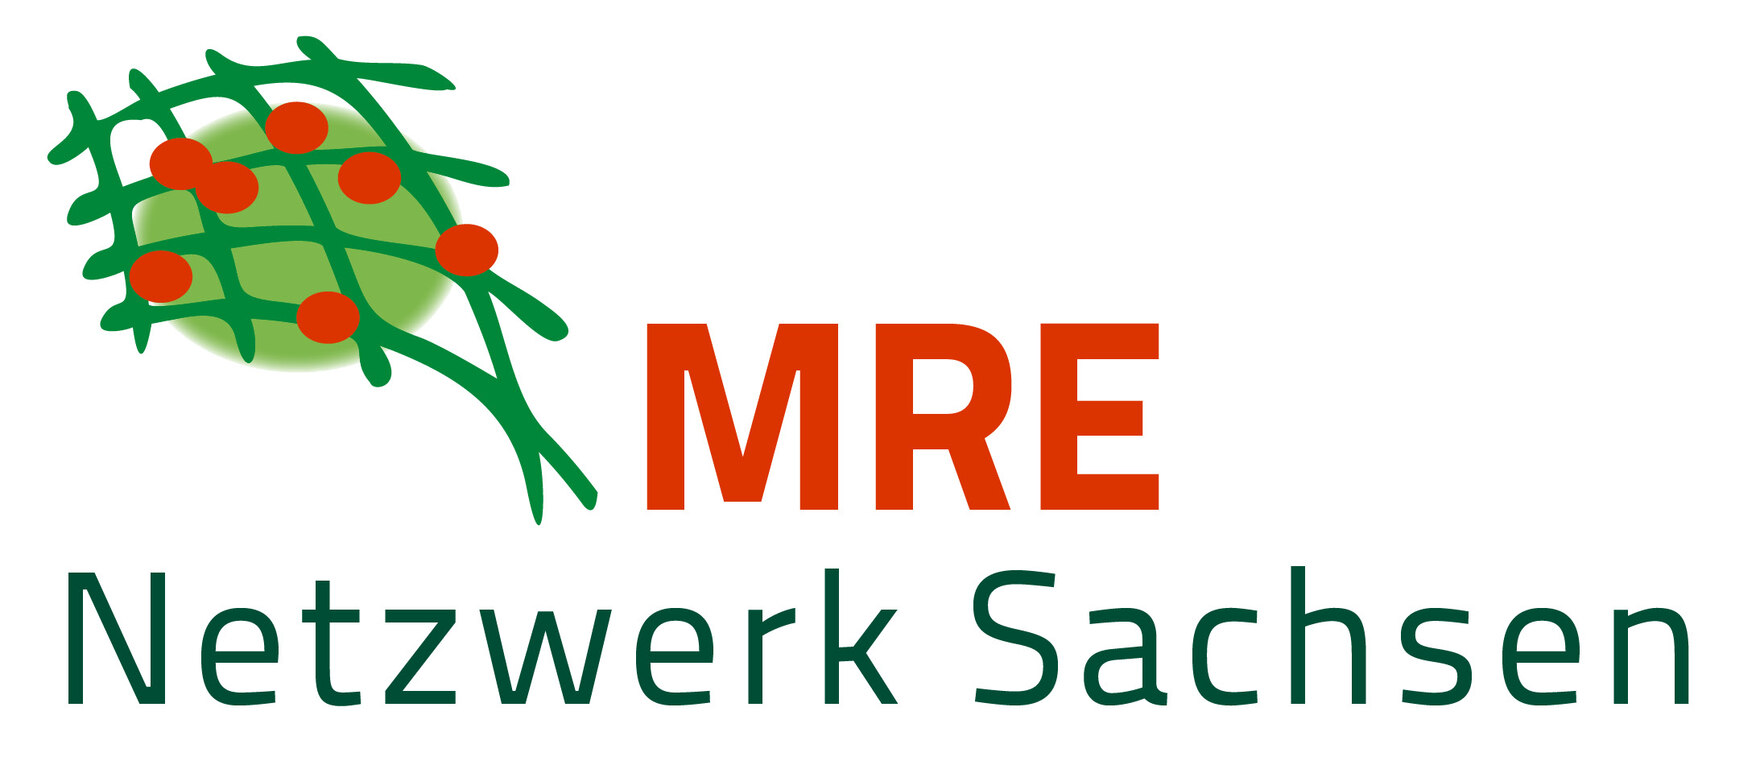 MRE Netzwerk Sachsen